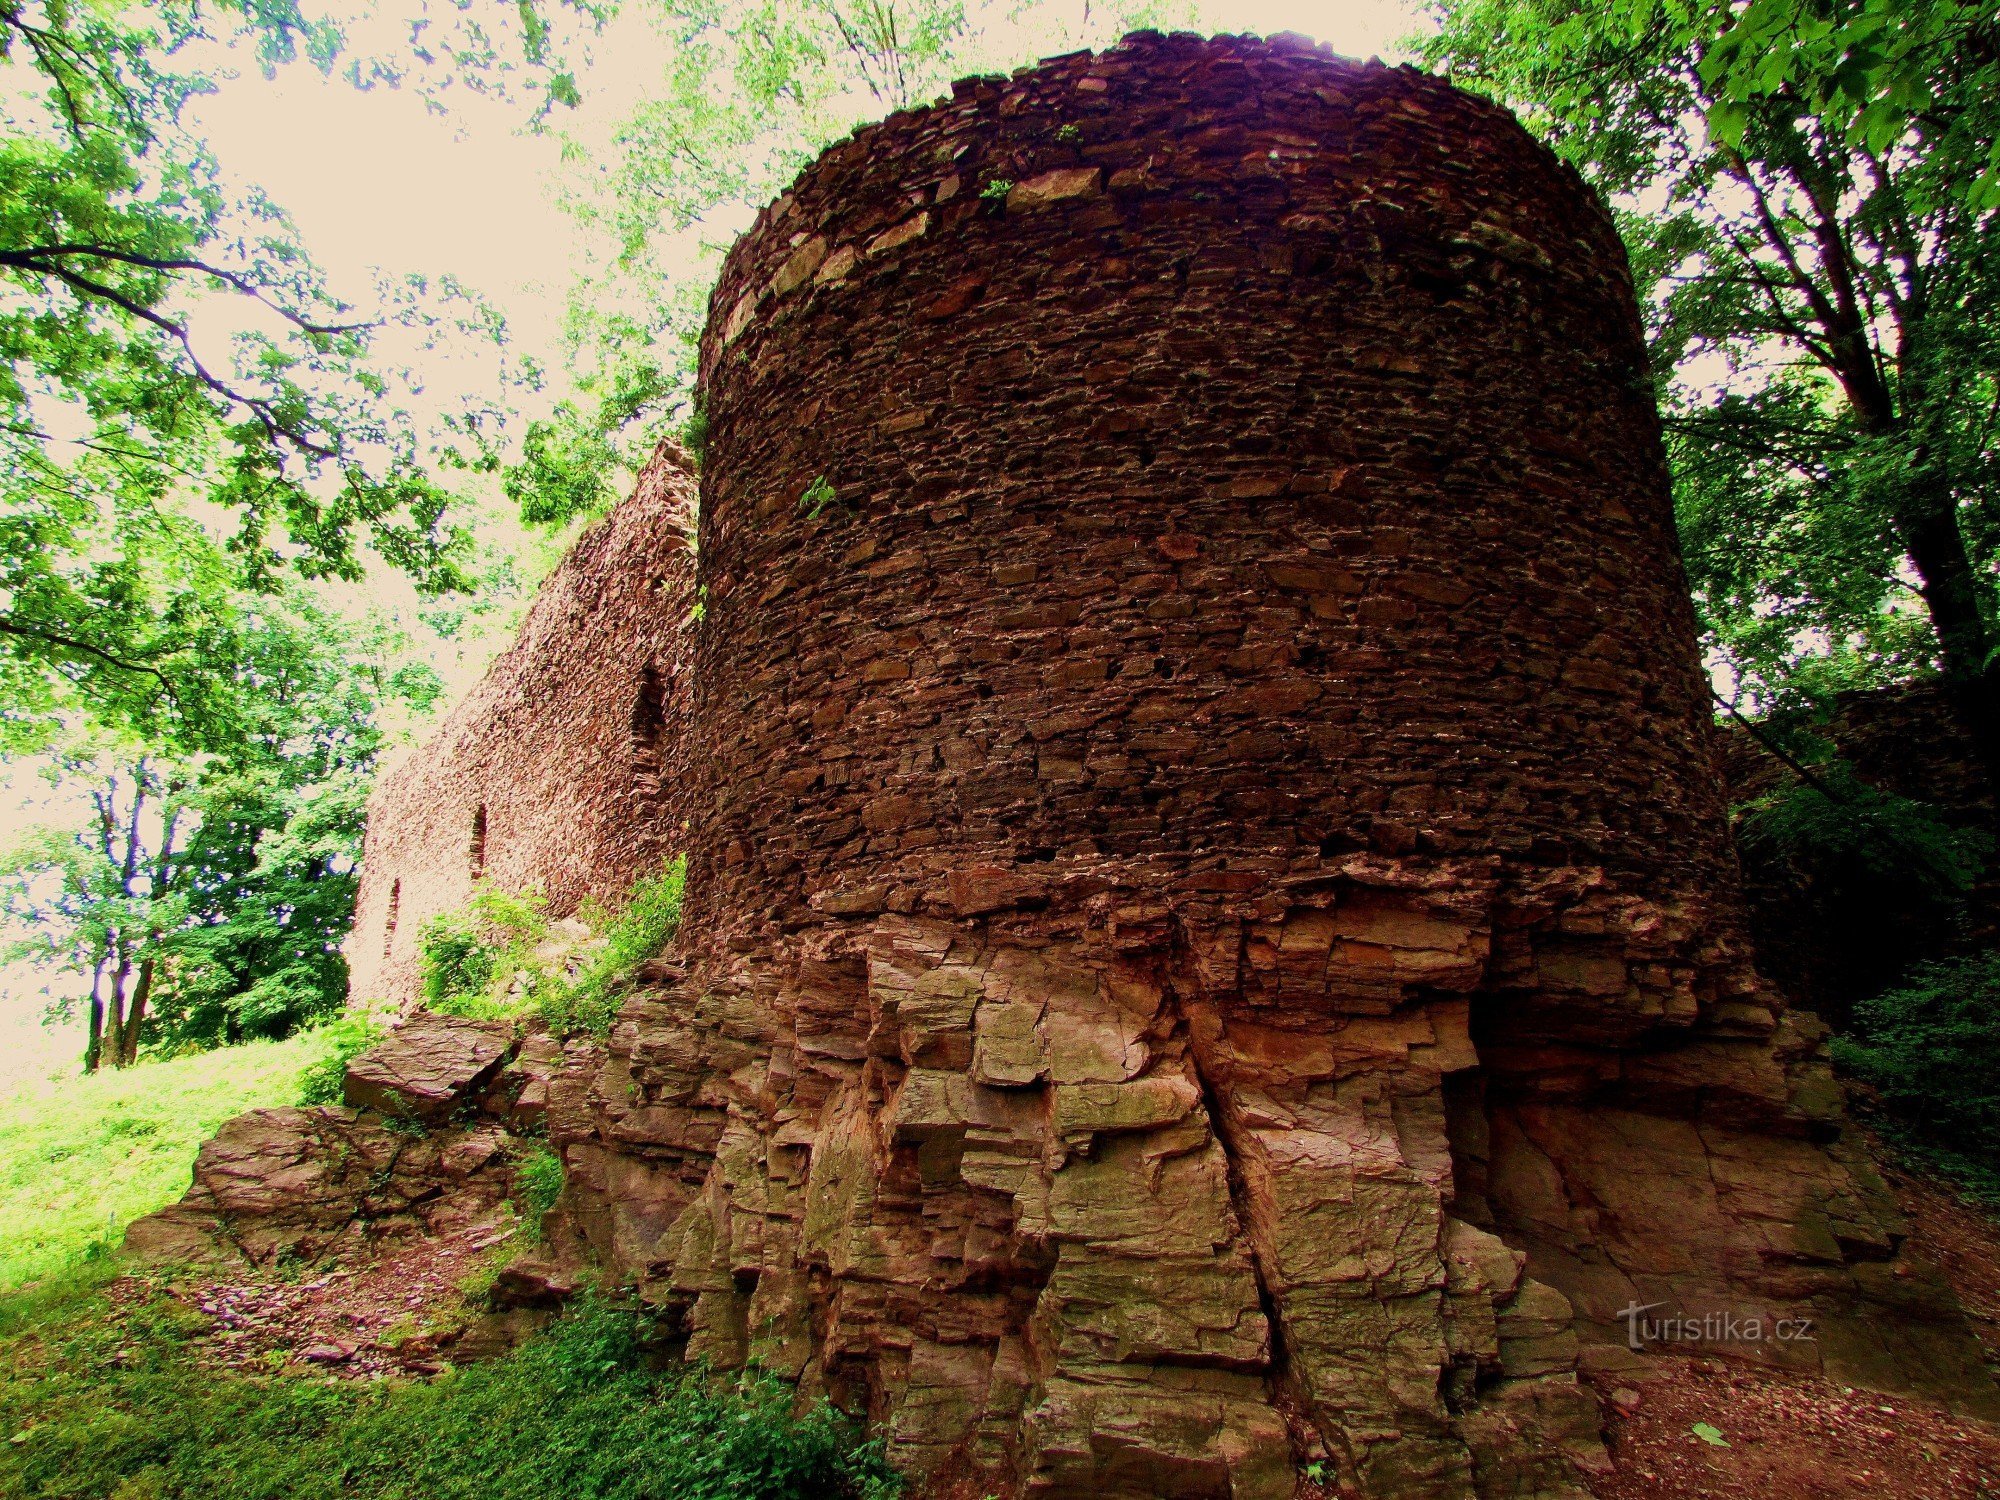 În spatele ruinelor orașului Cimburk din orașul Trnávka